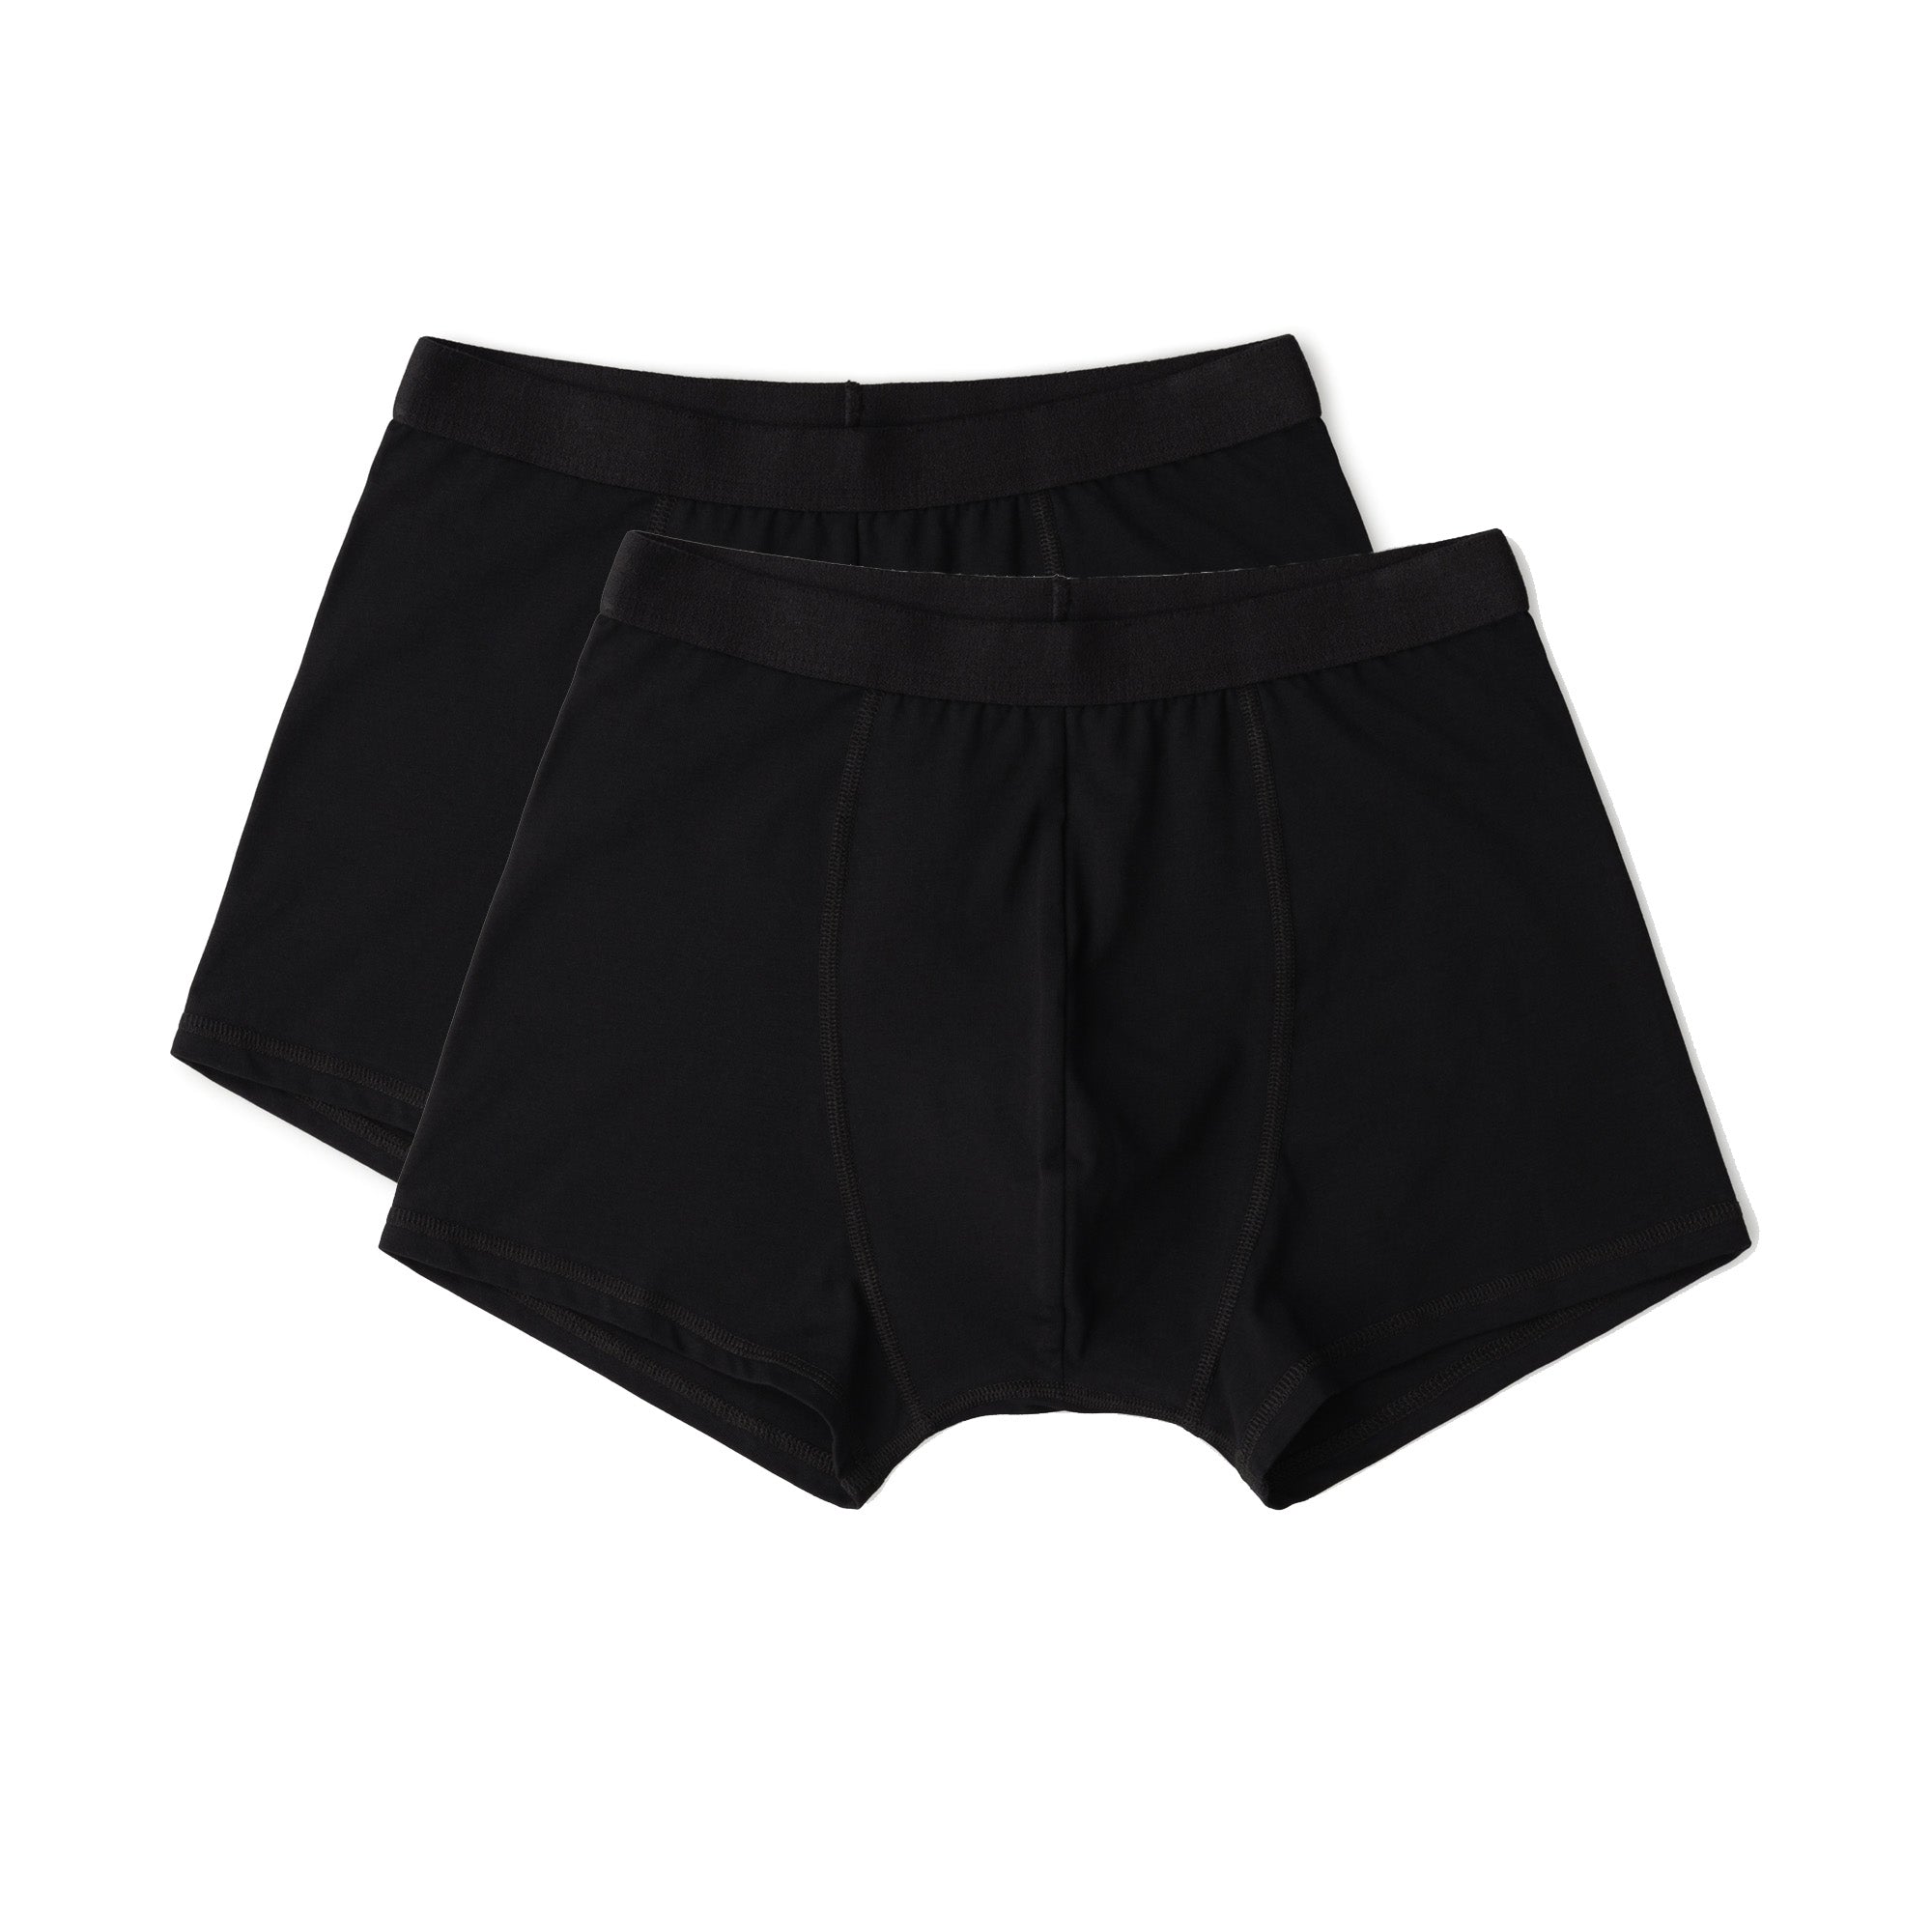 Multi 2-Pack Cotton Boxer Briefs Underwear